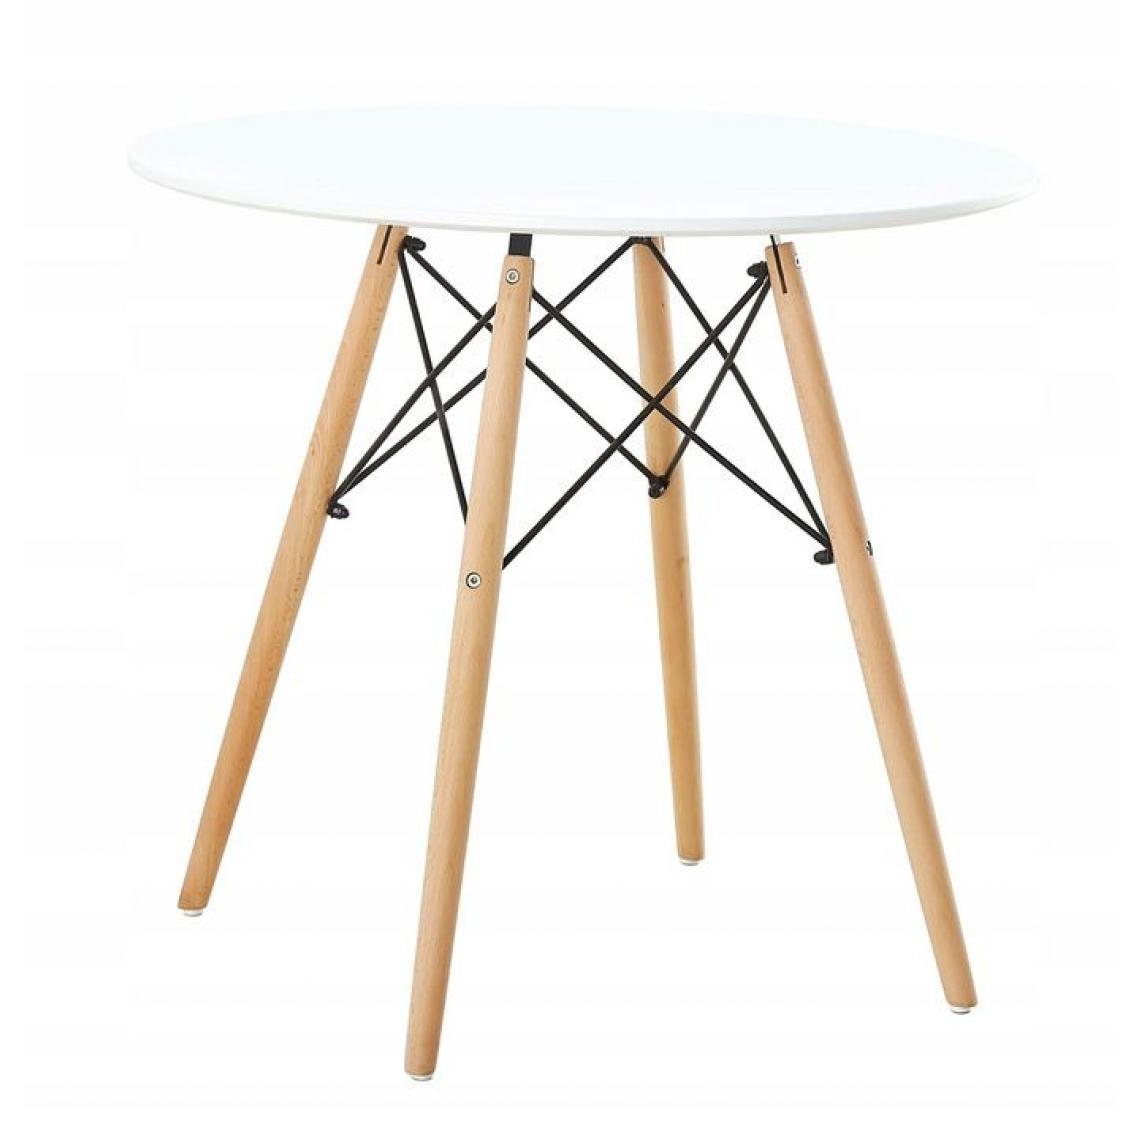 Hucoco - MSTORE - Table moderne pour la salle à manger salon cuisine - Diamètre plateau 80cm - Style scandinave - Pieds en hêtre - Blanc - Tables à manger